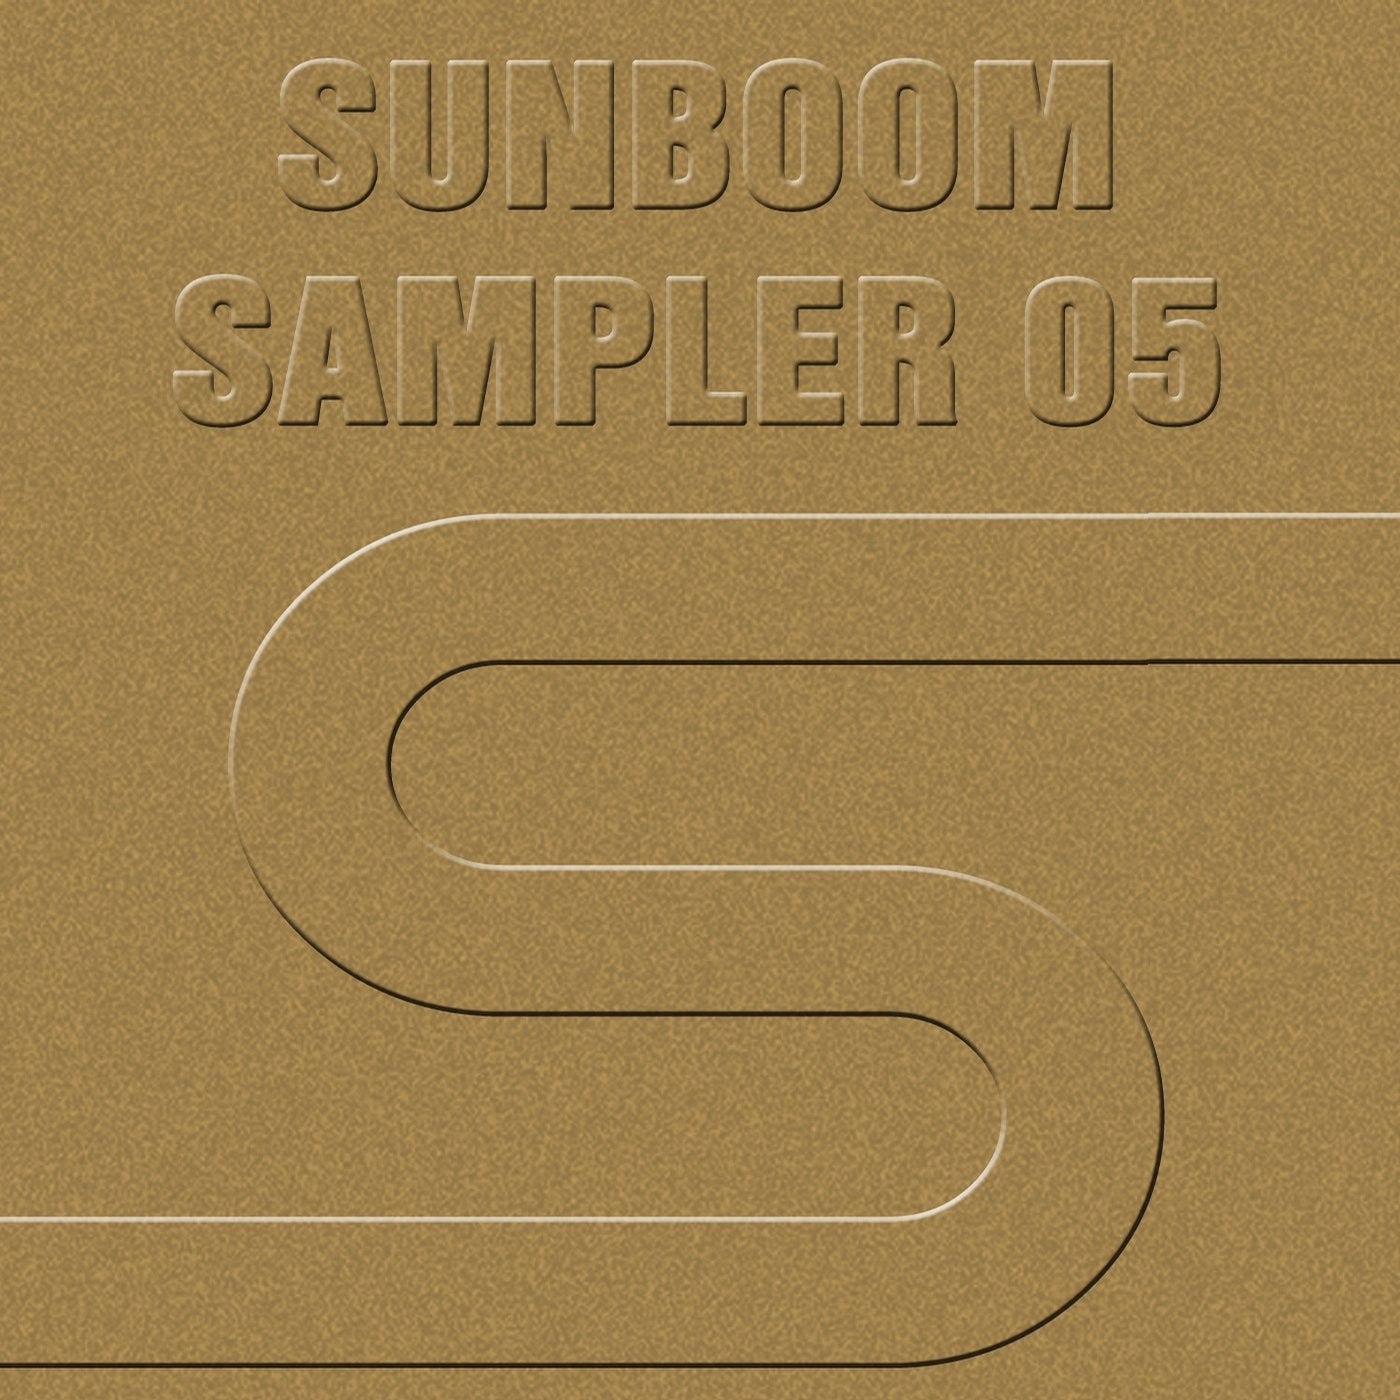 Sunboom Sampler 05